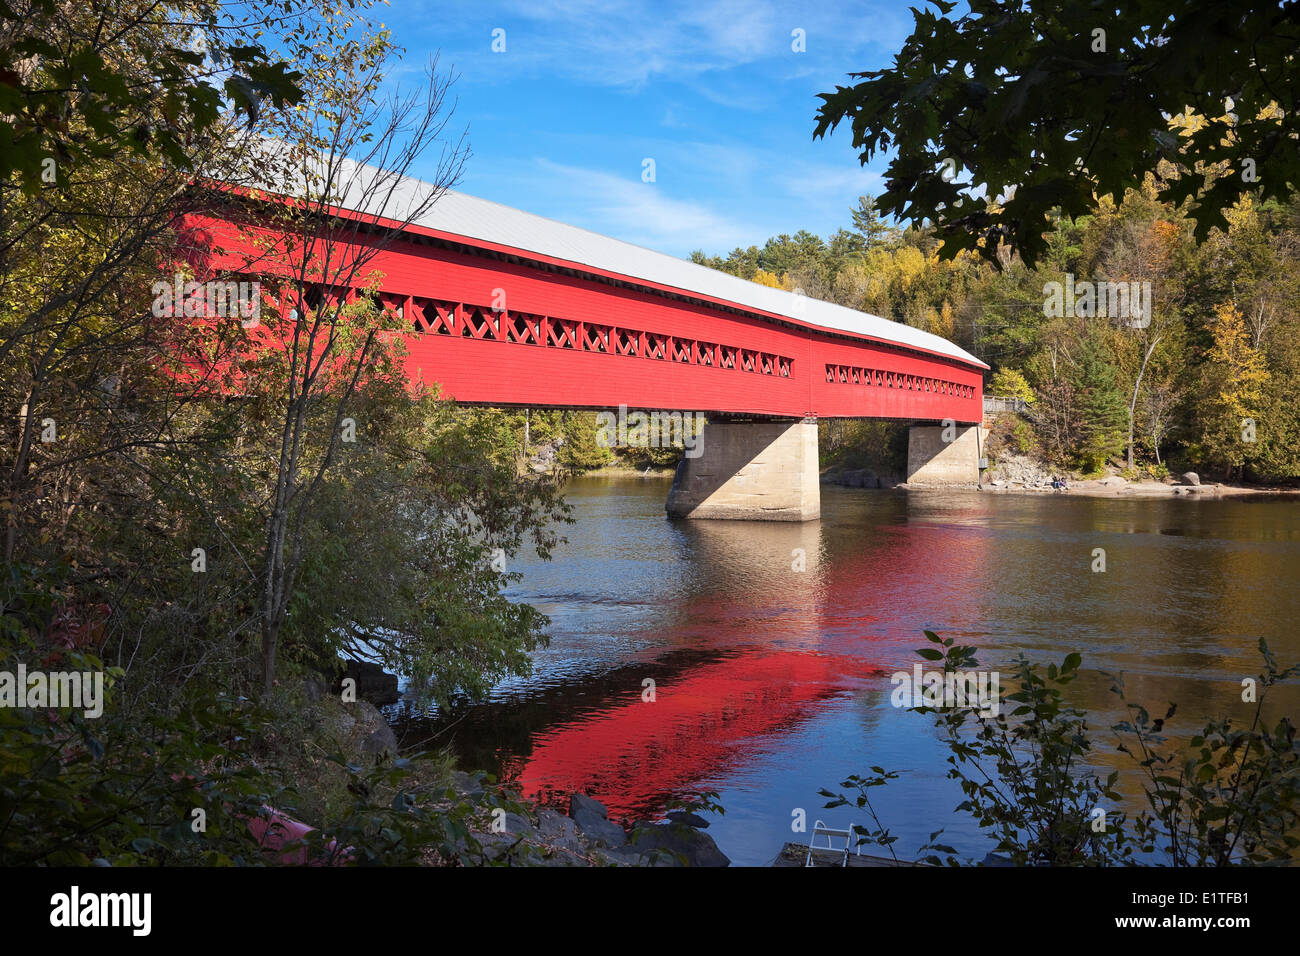 Pont couvert de Wakefield, Rivière Gatineau, Wakefield, Québec, Canada. Banque D'Images